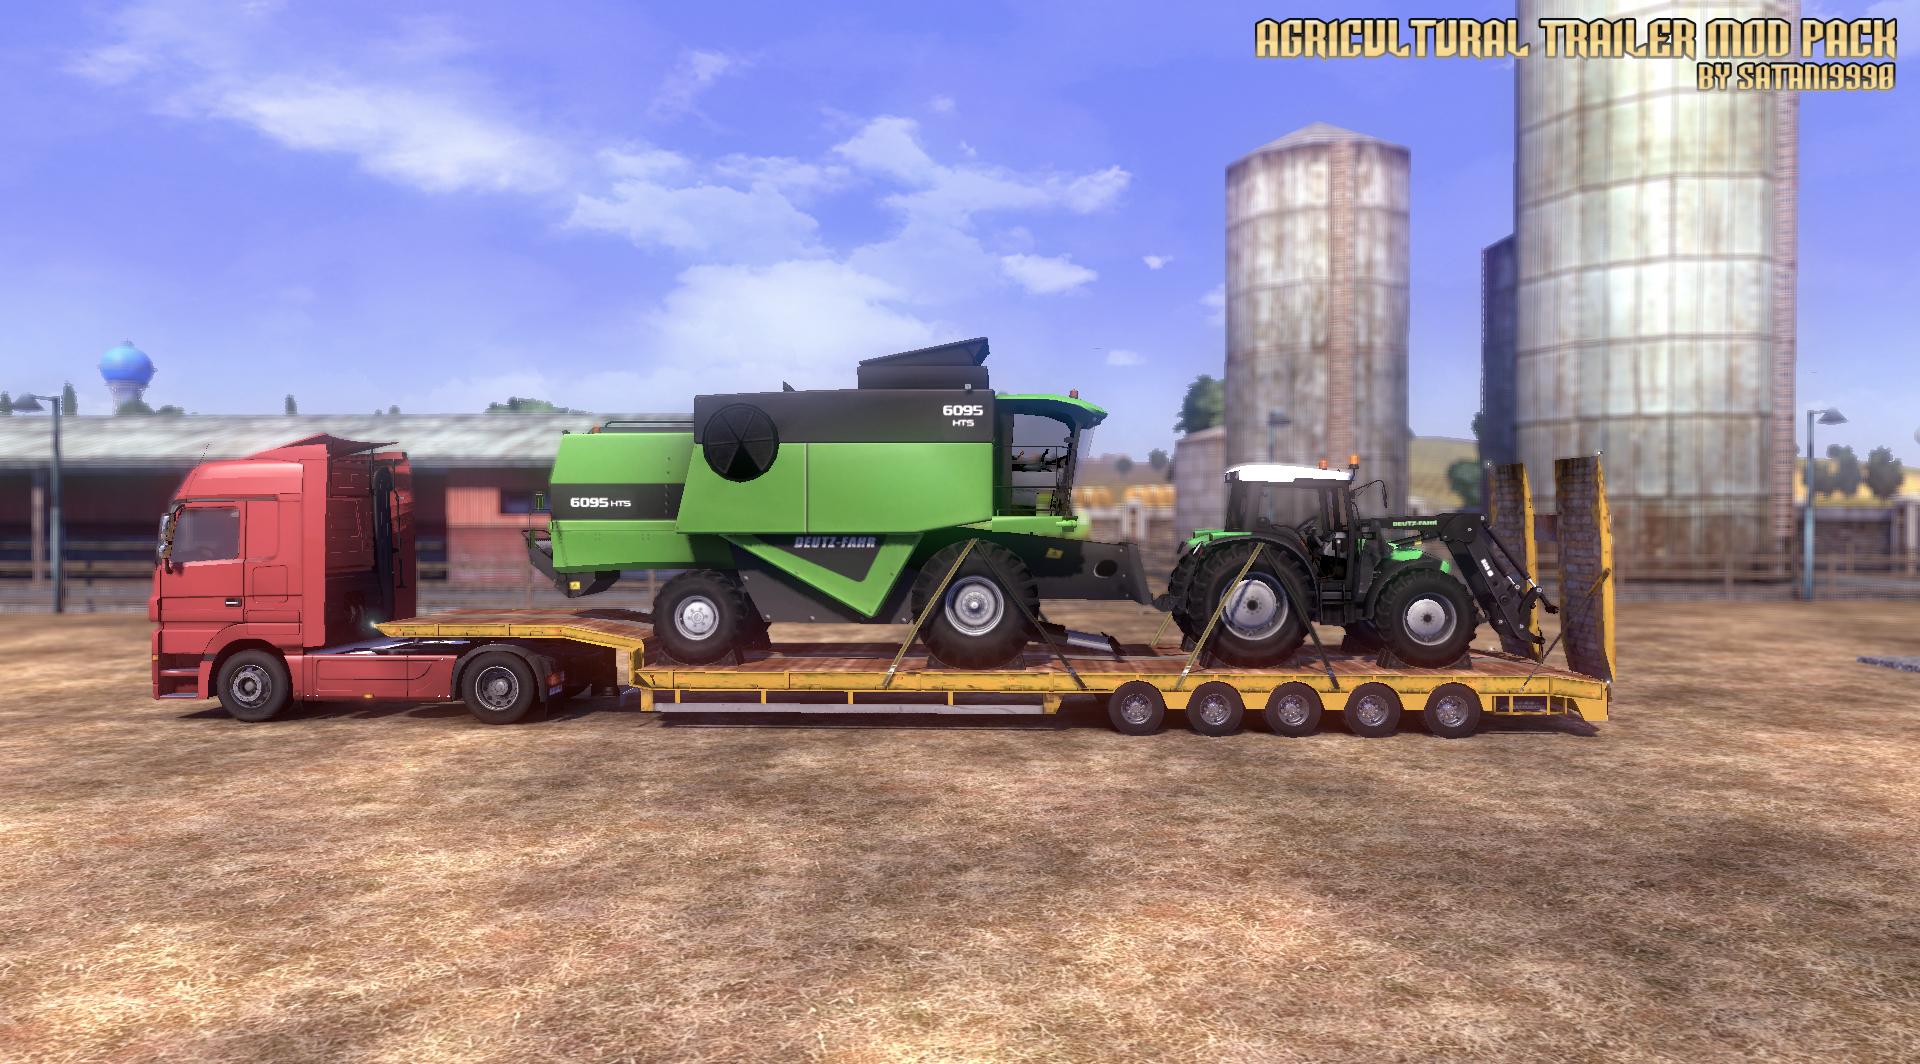 agricultural-trailer-mod-pack-v1-0_4